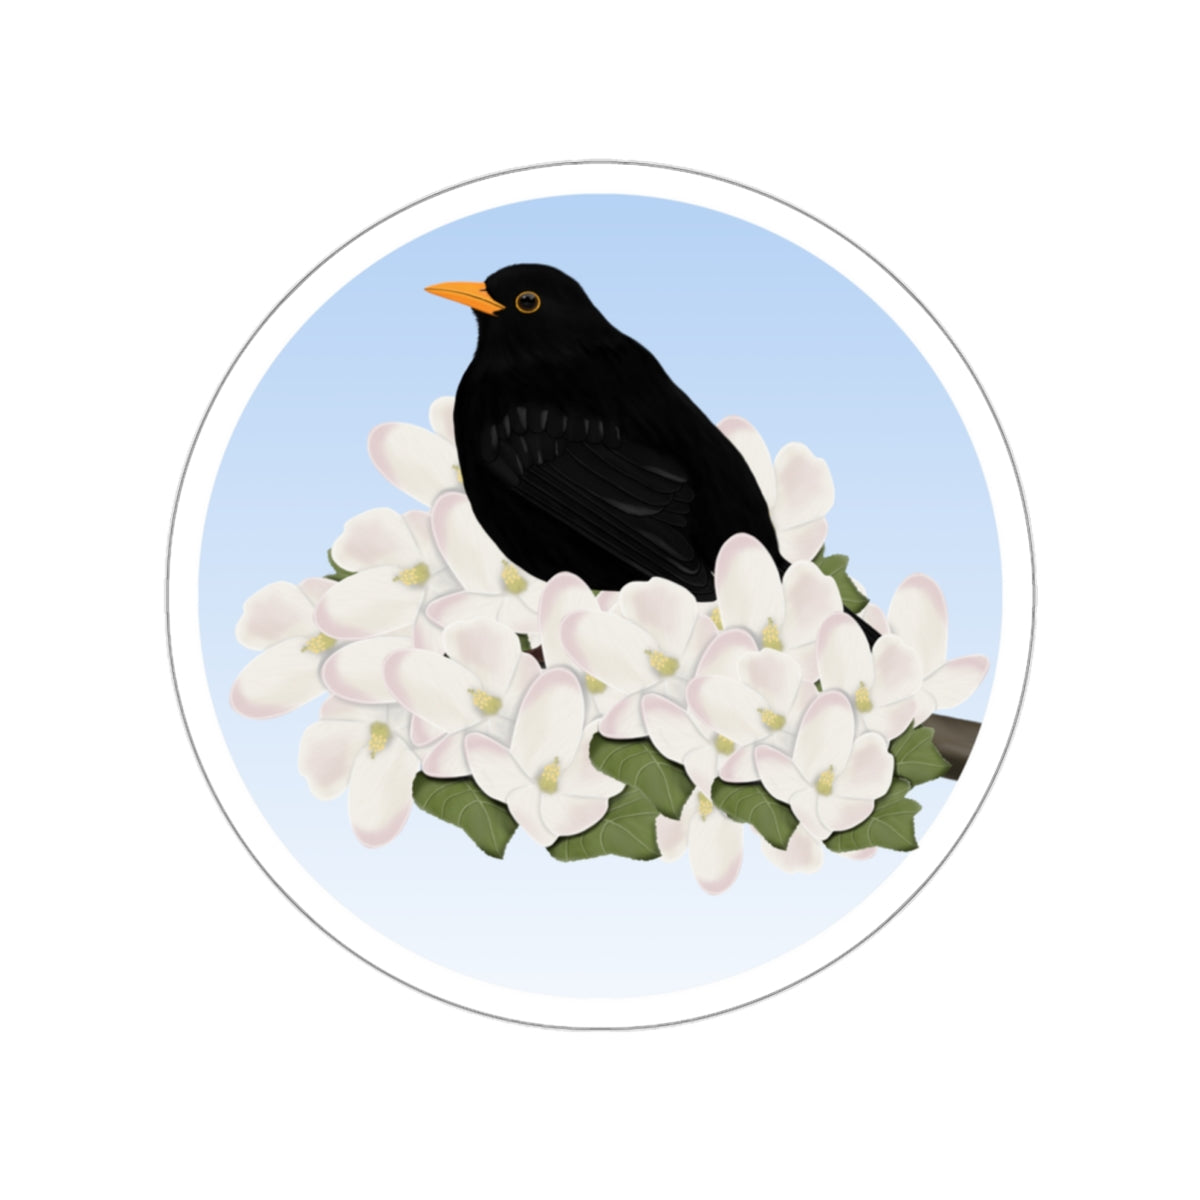 blackbird bird sticker